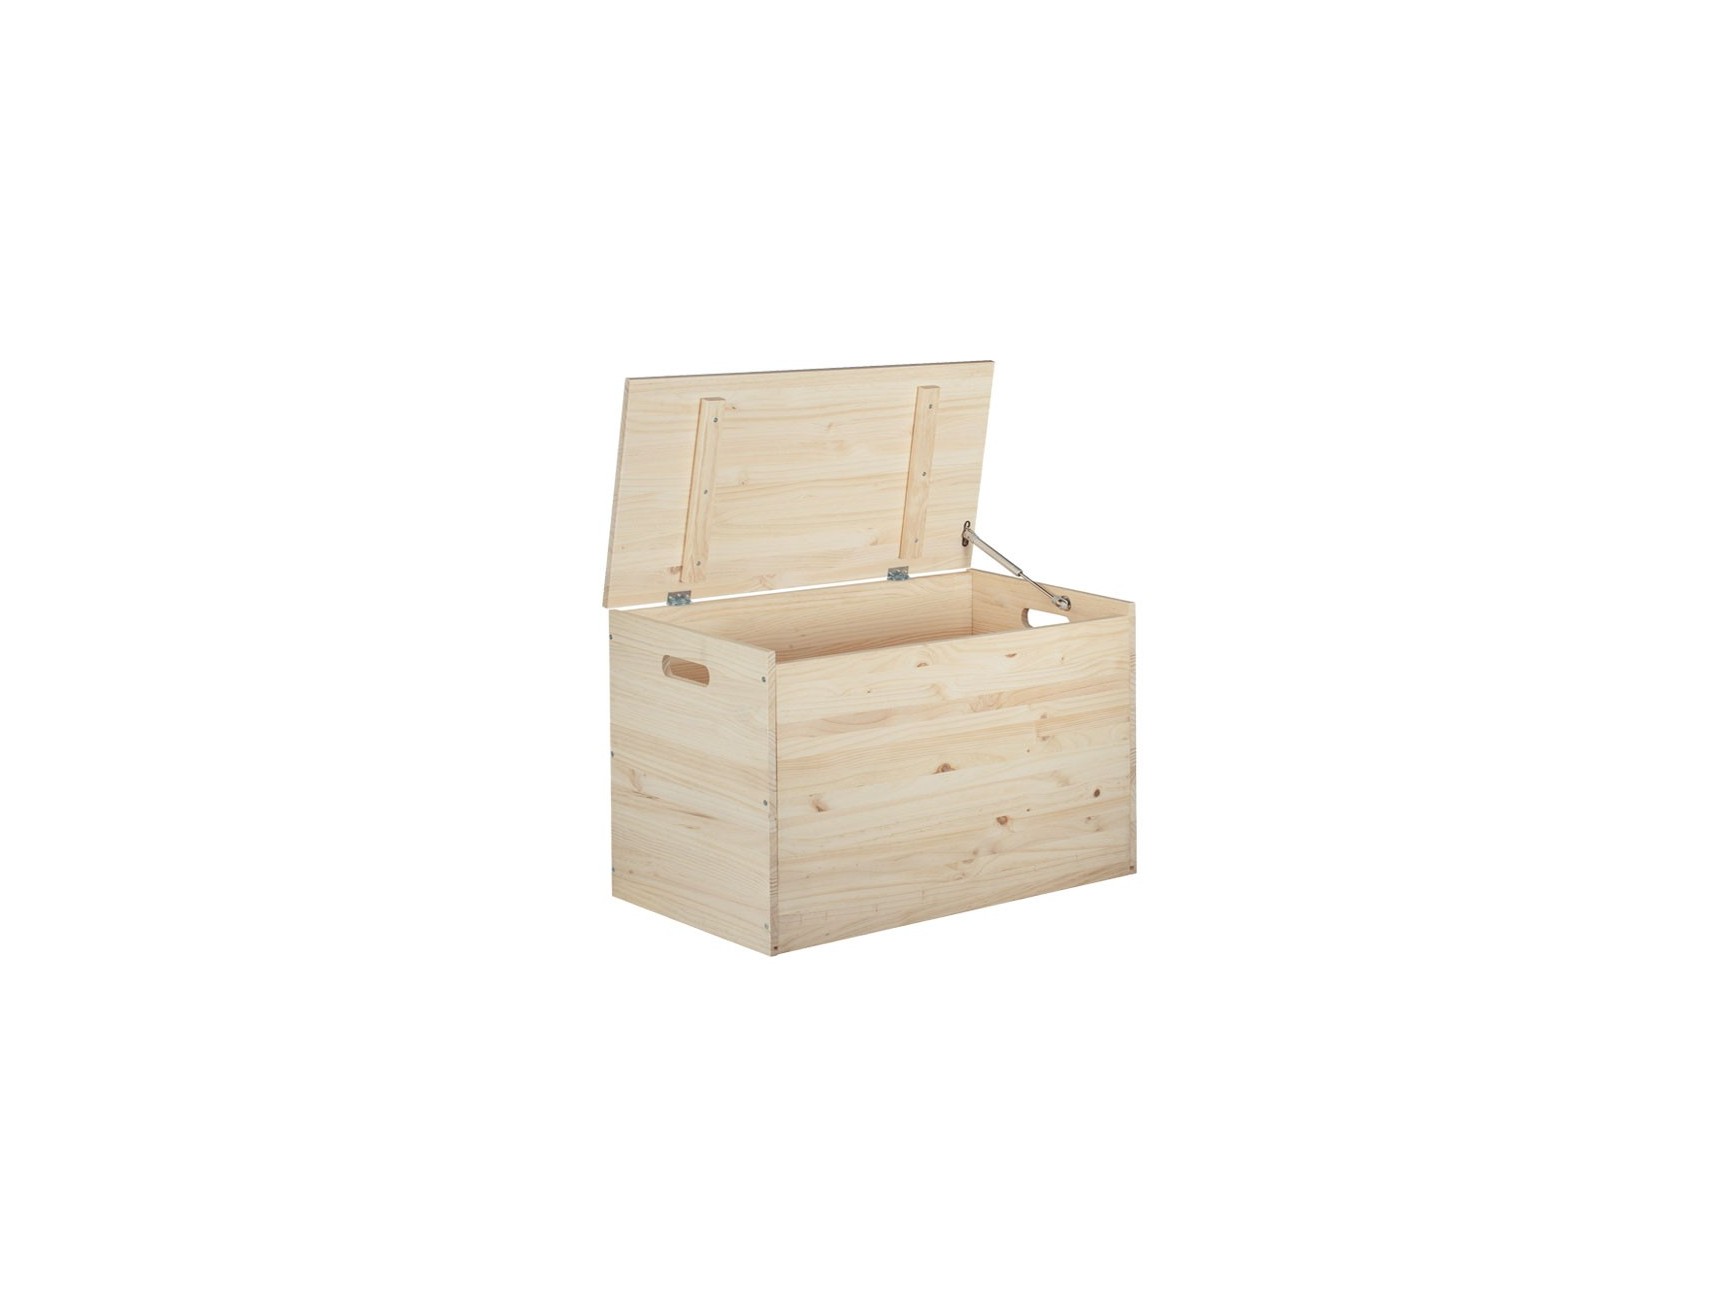 Baúl de madera con bandeja interior 90x45x47cm - Muebles Chaflan